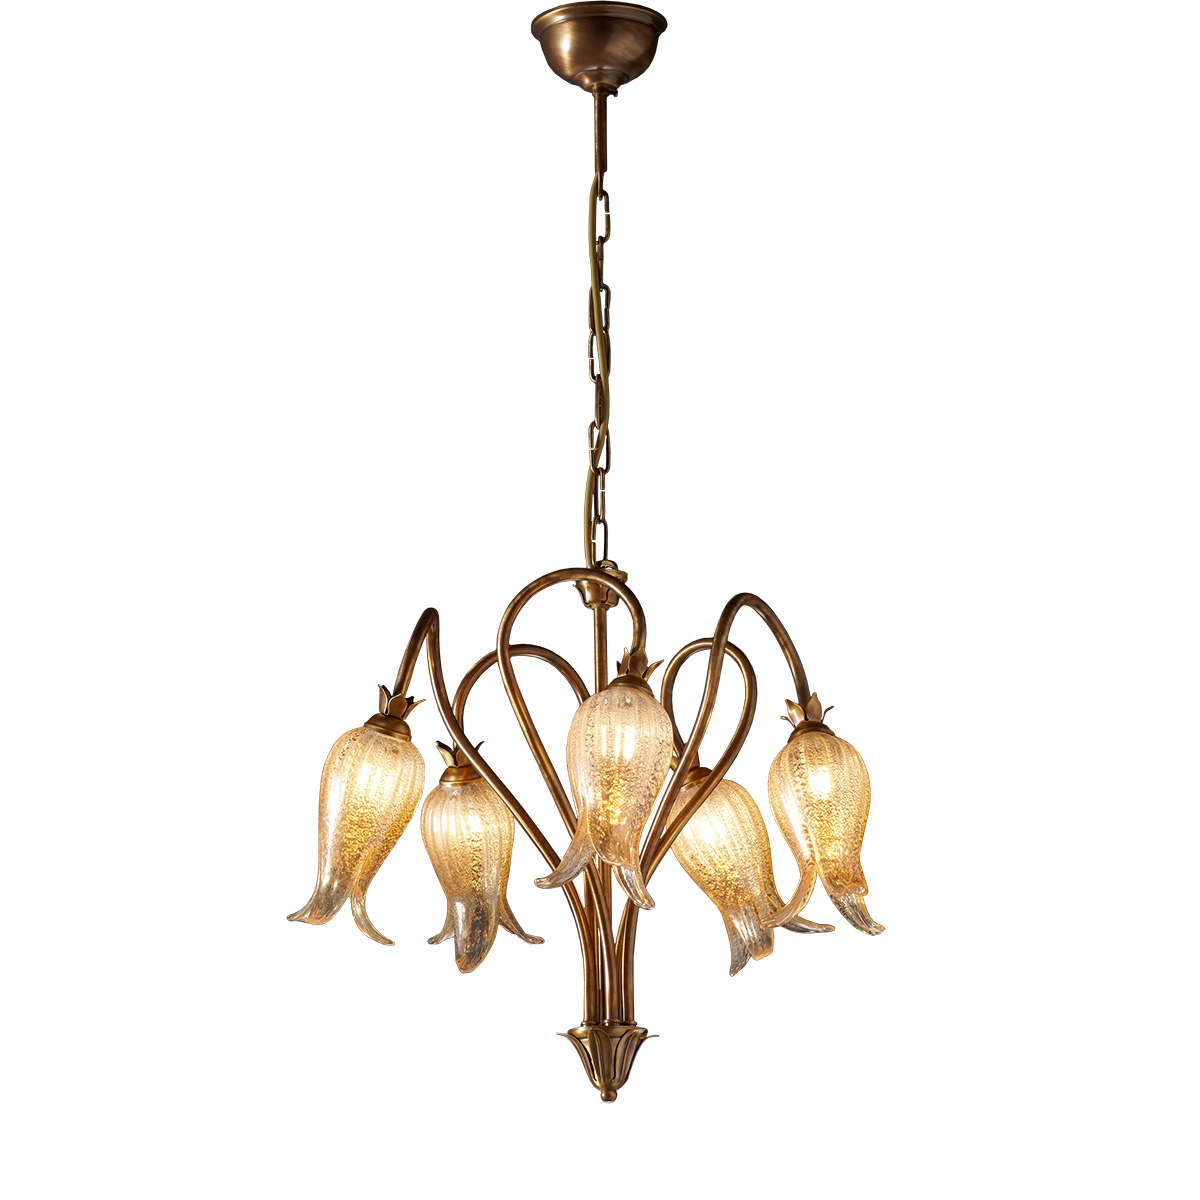 Κλασικό 5φωτο κρεμαστό φωτιστικό ΖΗΡΕΙΑ classic 5-bulb chandelier